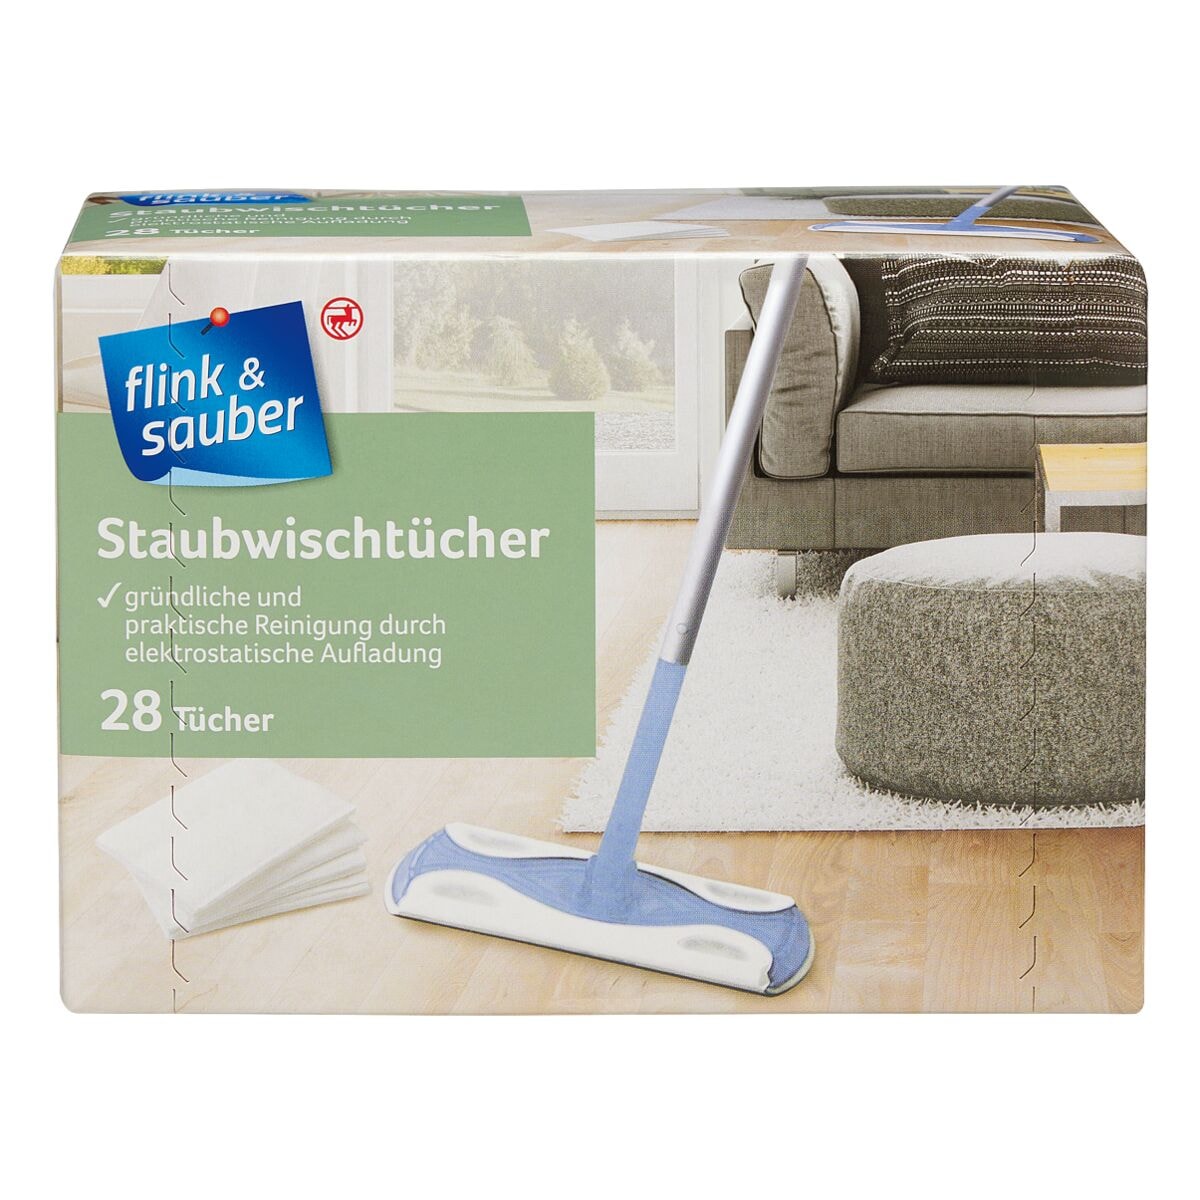 flink & sauber 28er-Pack Staubwischtcher